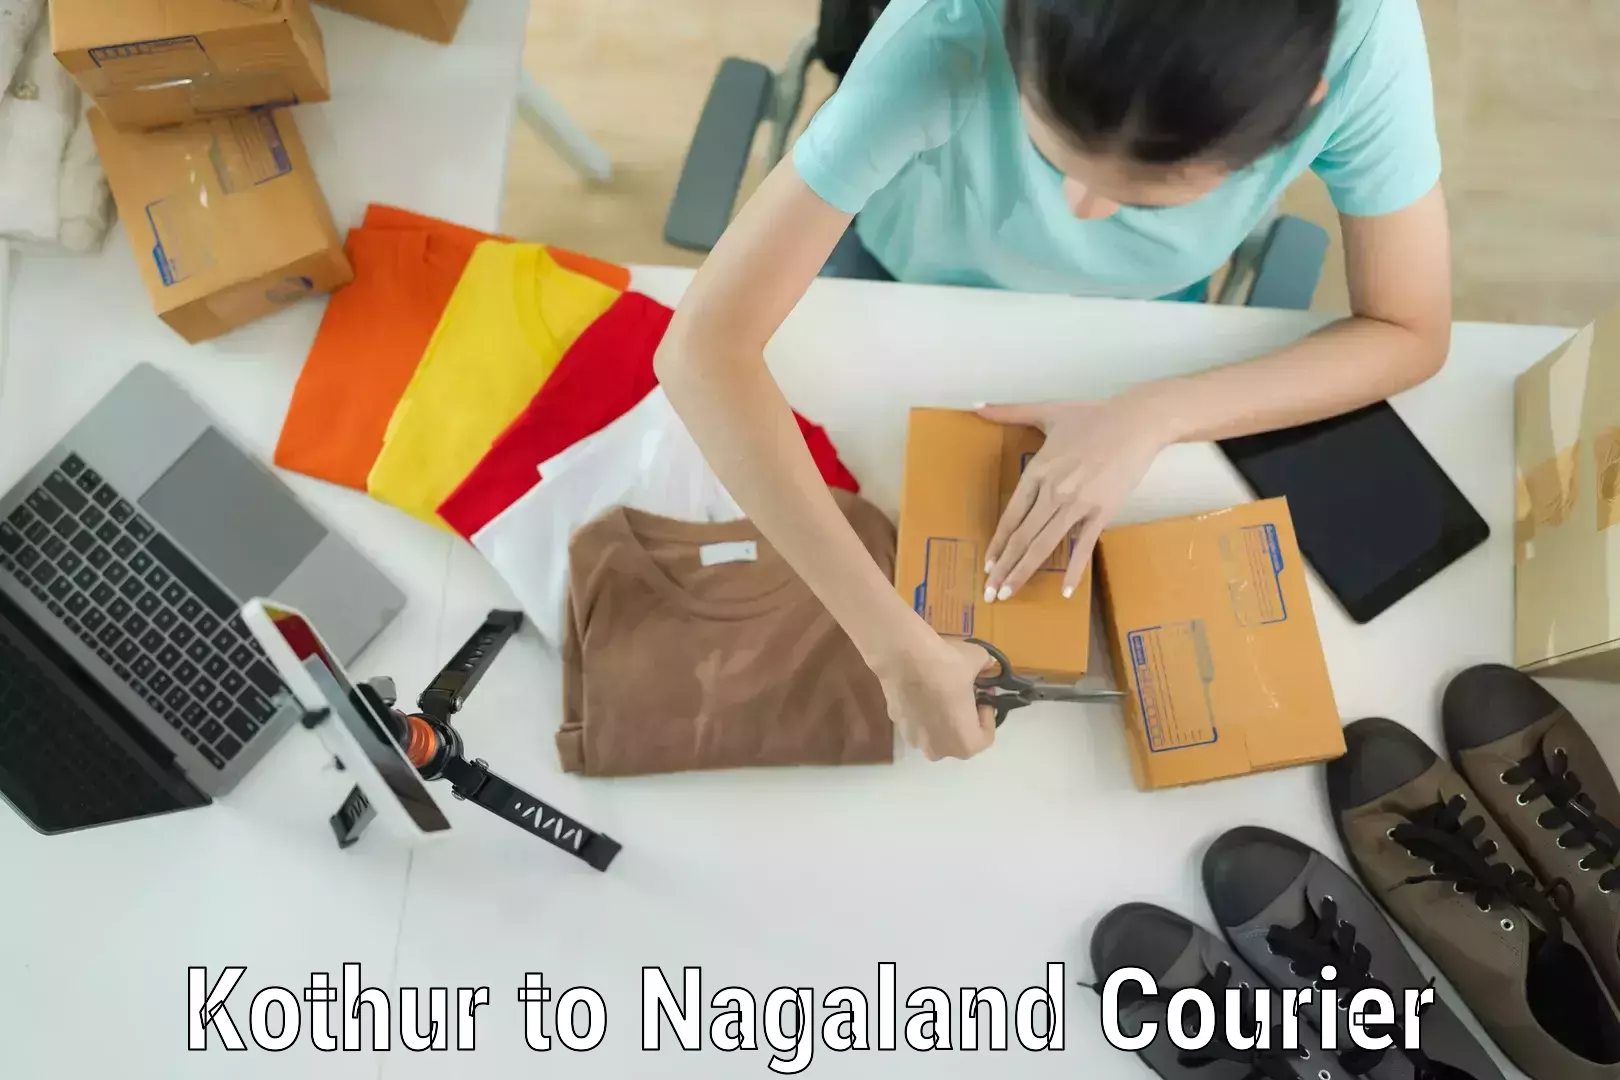 Baggage transport network Kothur to Nagaland